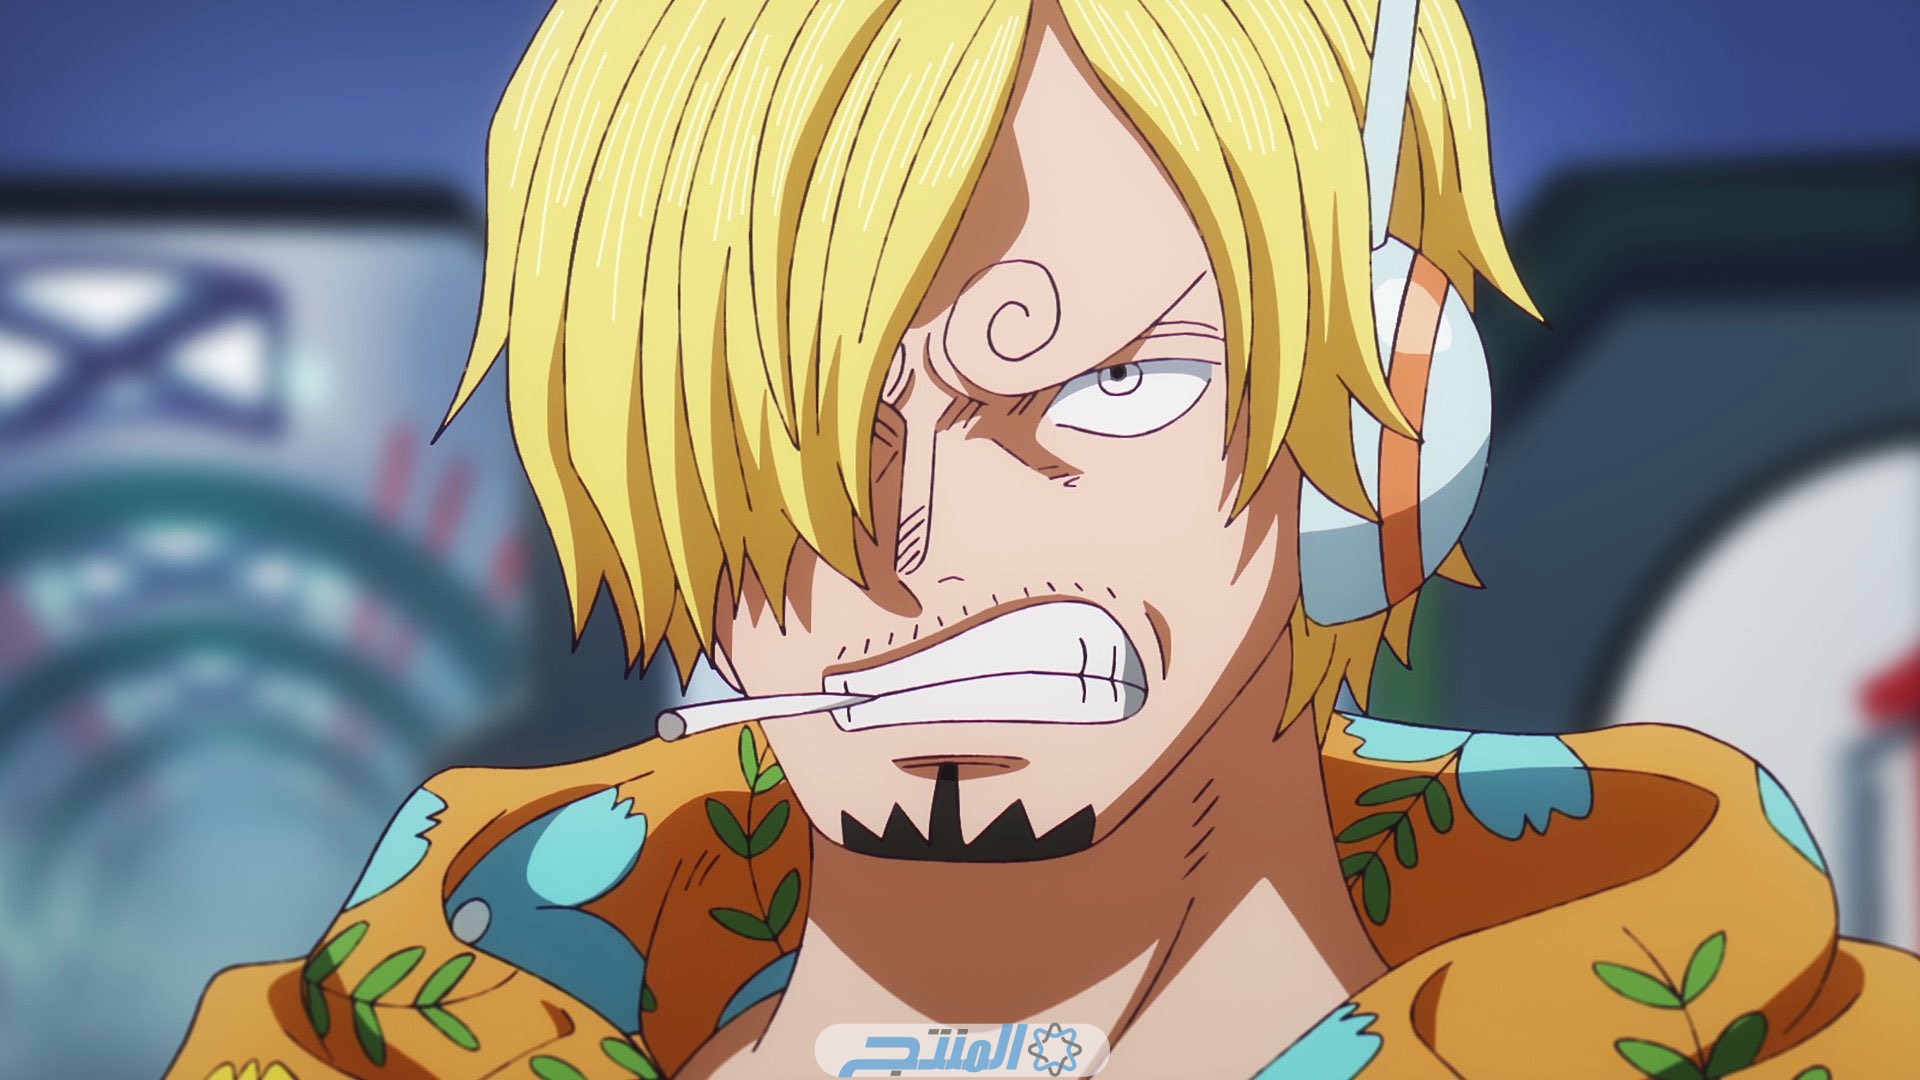 مشاهدة One Piece الحلقة 1095 مترجم